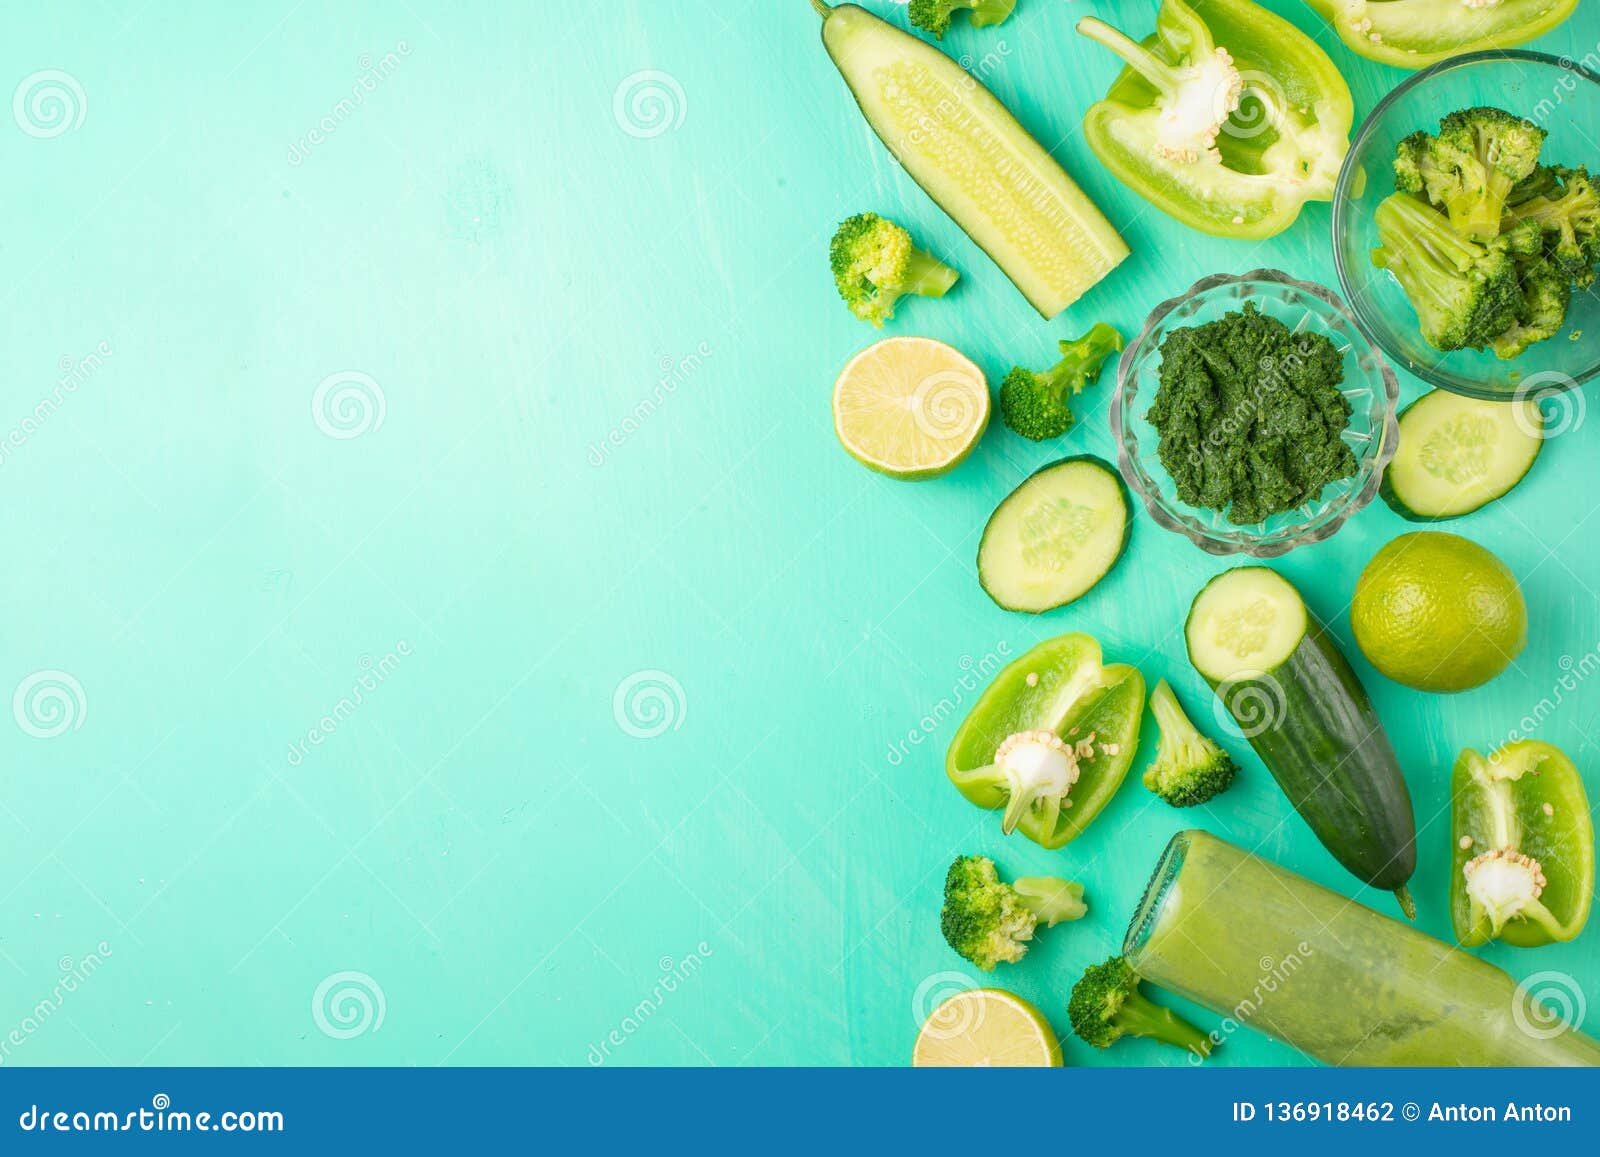 Rau xanh Detox là món ăn không chỉ có hương vị tuyệt vời mà còn mang tính đa dụng trong việc thanh lọc cơ thể và tăng sinh lực. Hình ảnh về rau xanh Detox sẽ giúp bạn thêm hiểu về tác dụng của chúng và cách sử dụng trong bữa ăn hàng ngày. 